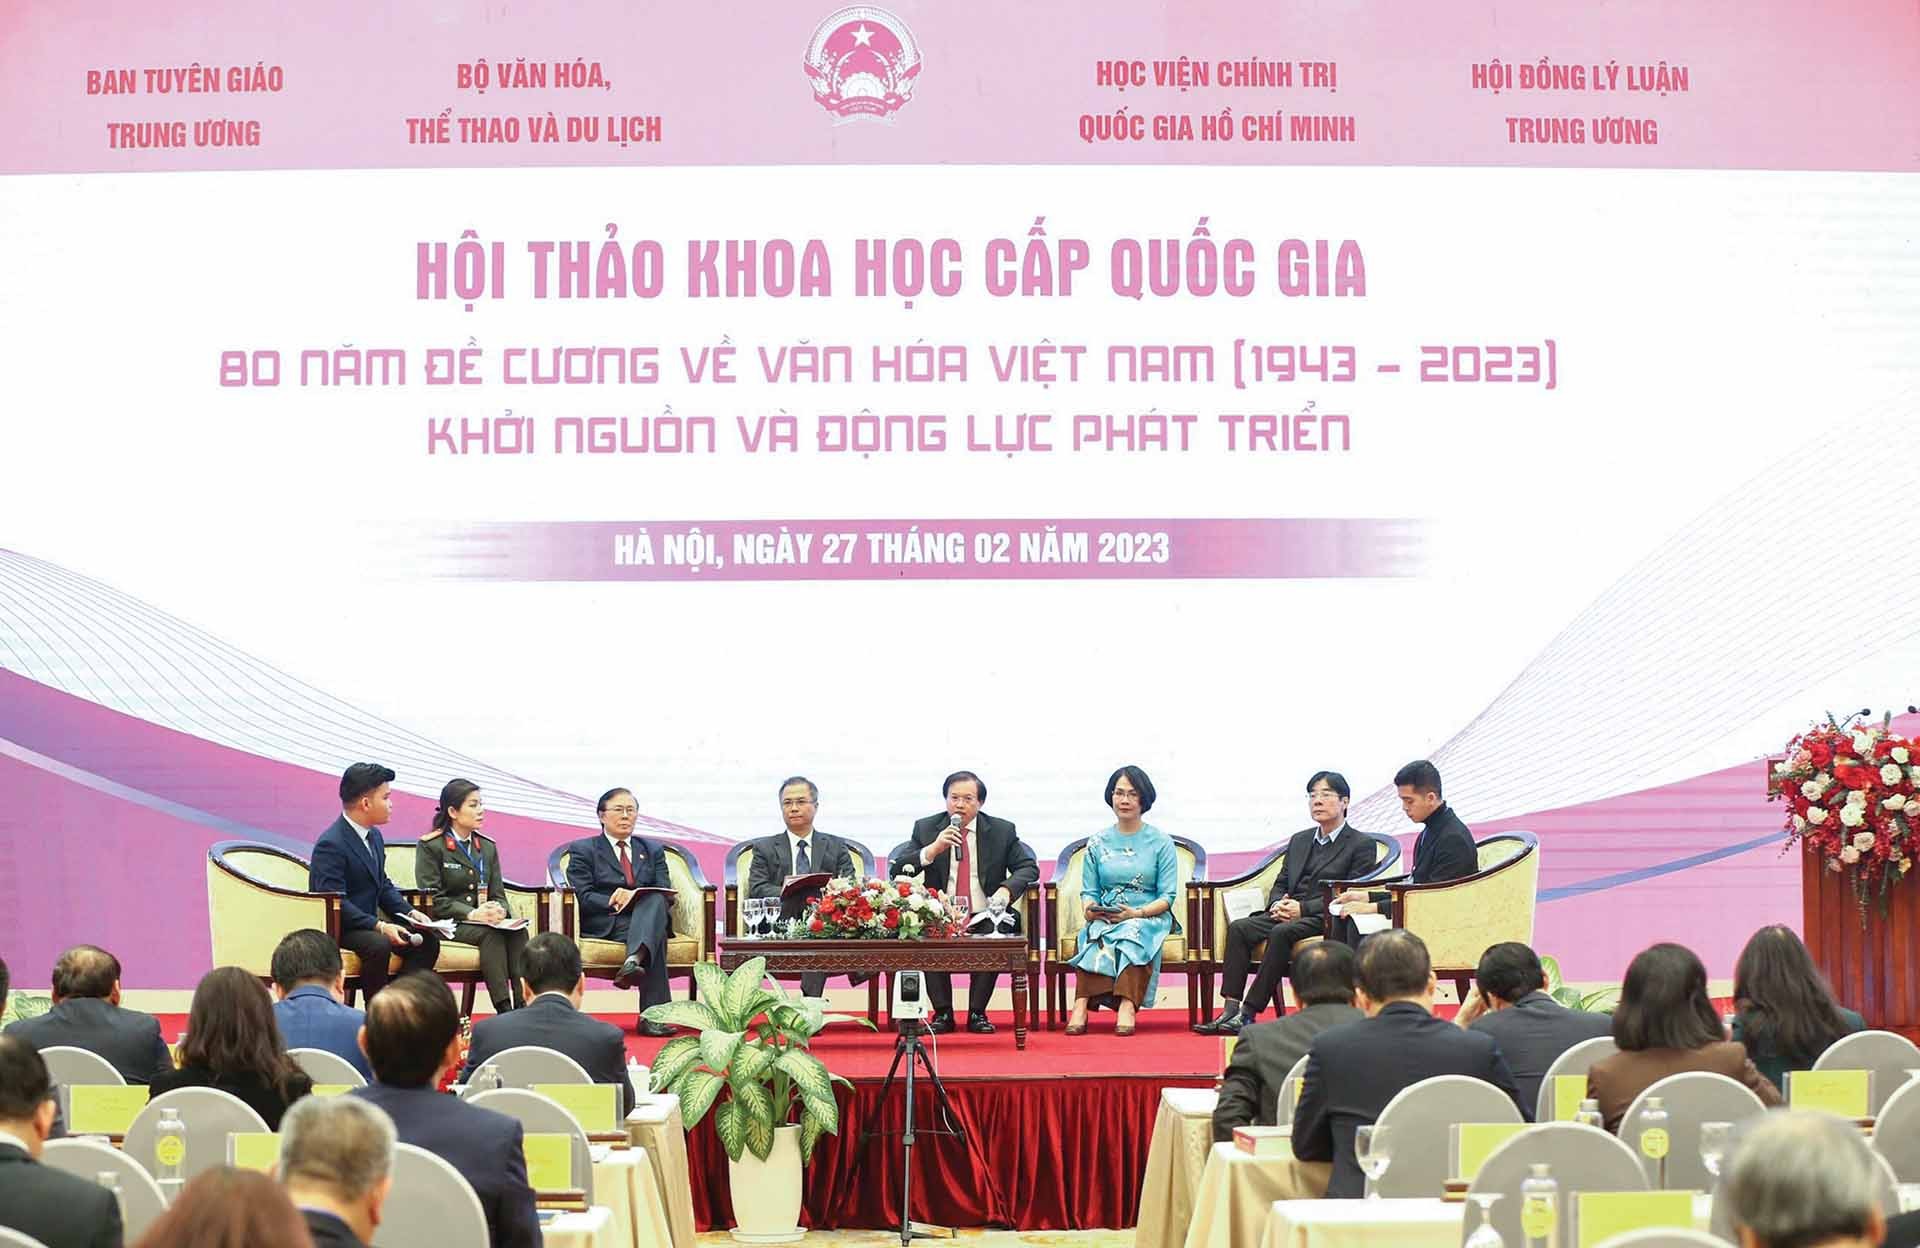 Các đại biểu thảo luận tại Hội thảo khoa học cấp quốc gia 80 năm Đề cương về văn hóa Việt Nam. (Ảnh: Trần Huấn)